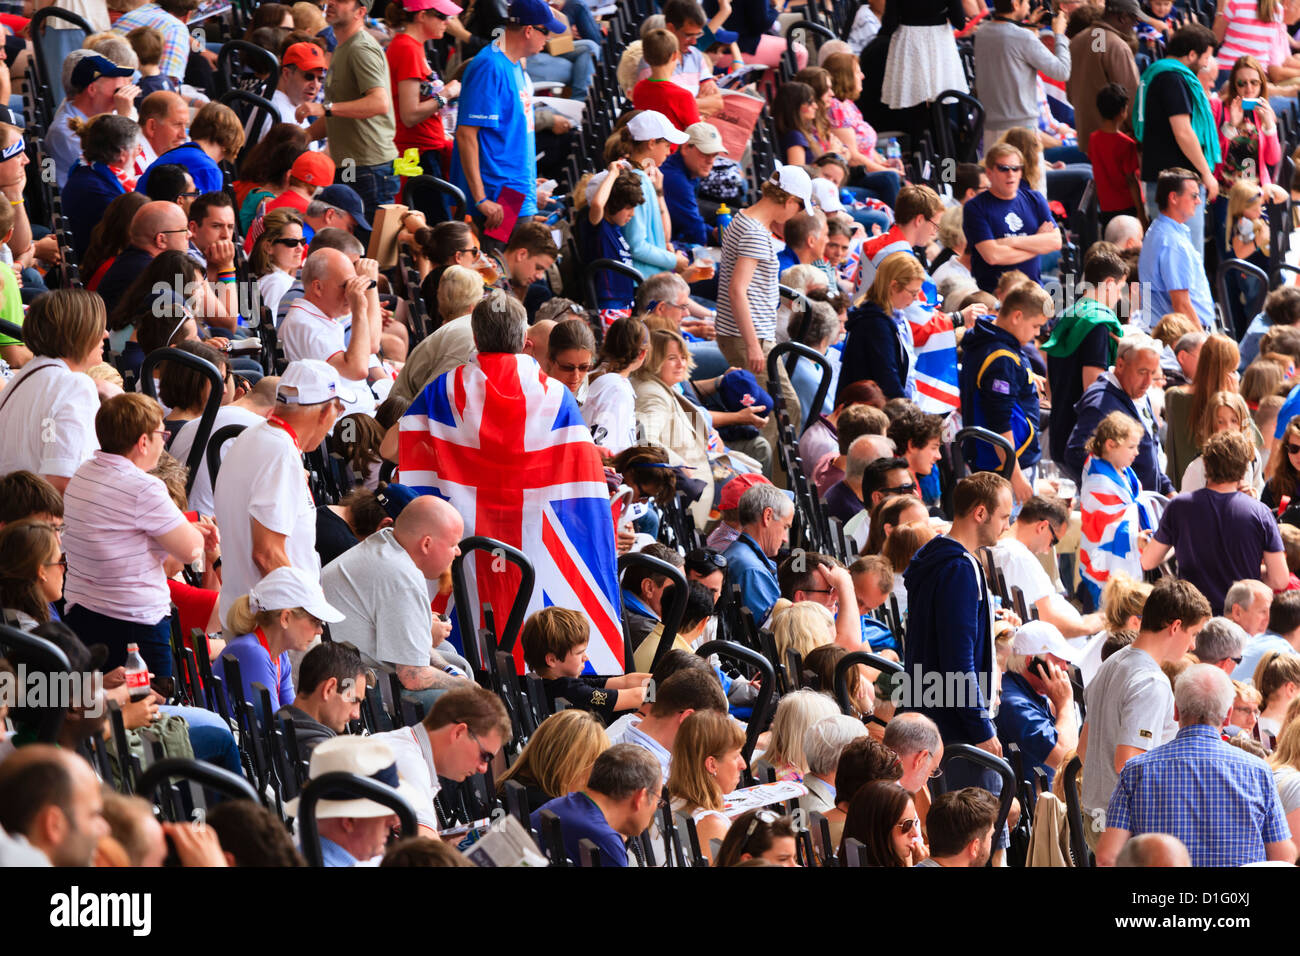 La folla di spettatori britannico con unione flag in un'arena sportiva, London, England, Regno Unito, Europa Foto Stock